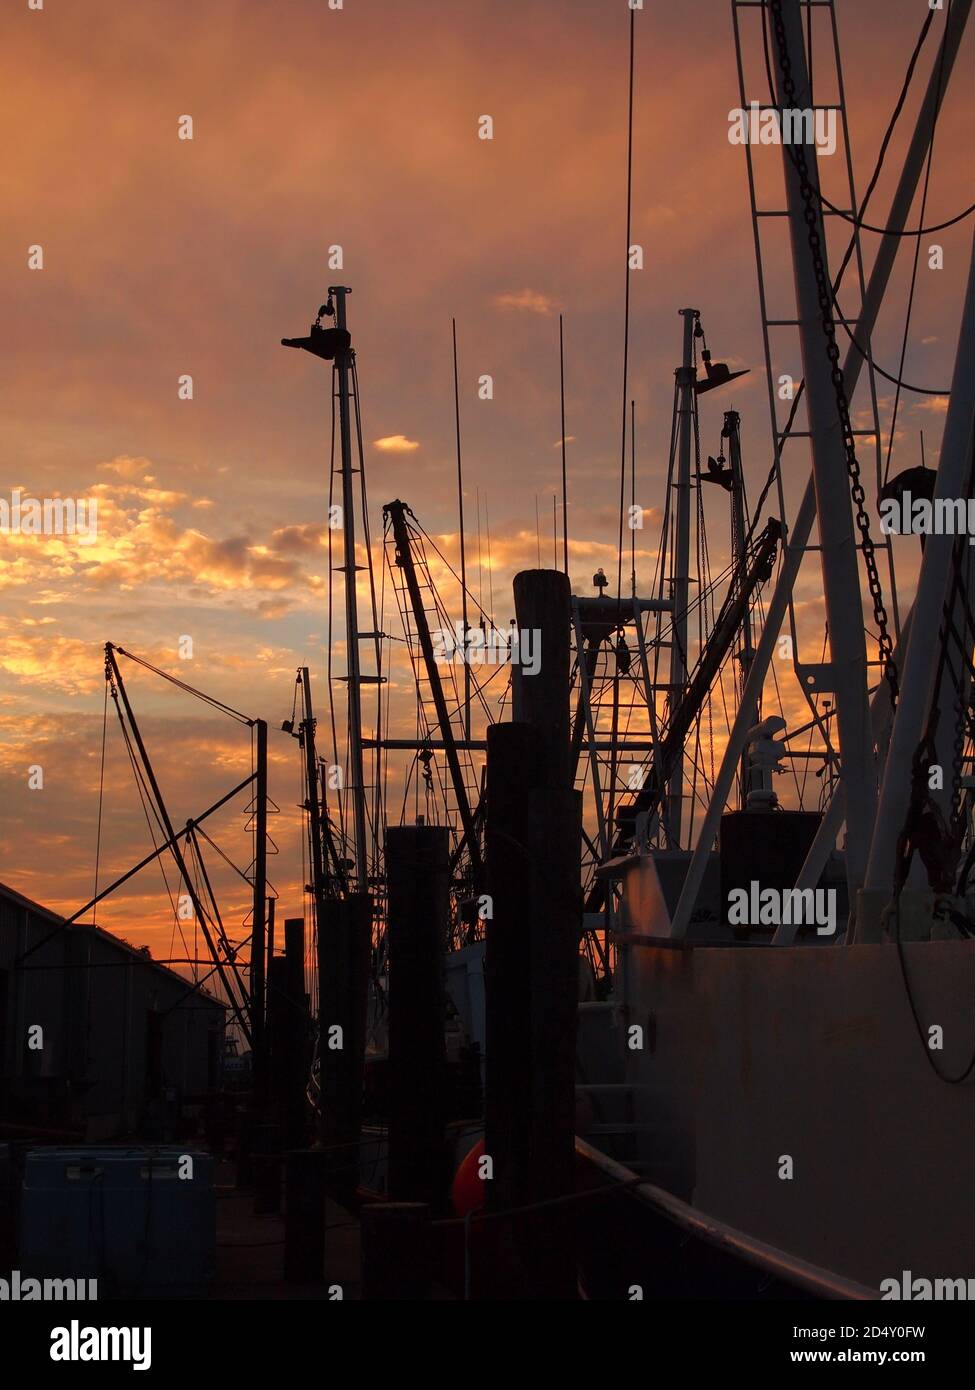 Bateau de pêche se montant en silhouette profonde après le coucher du soleil sur un ciel chaud avec des nuages rouges, jaunes et orange. Banque D'Images